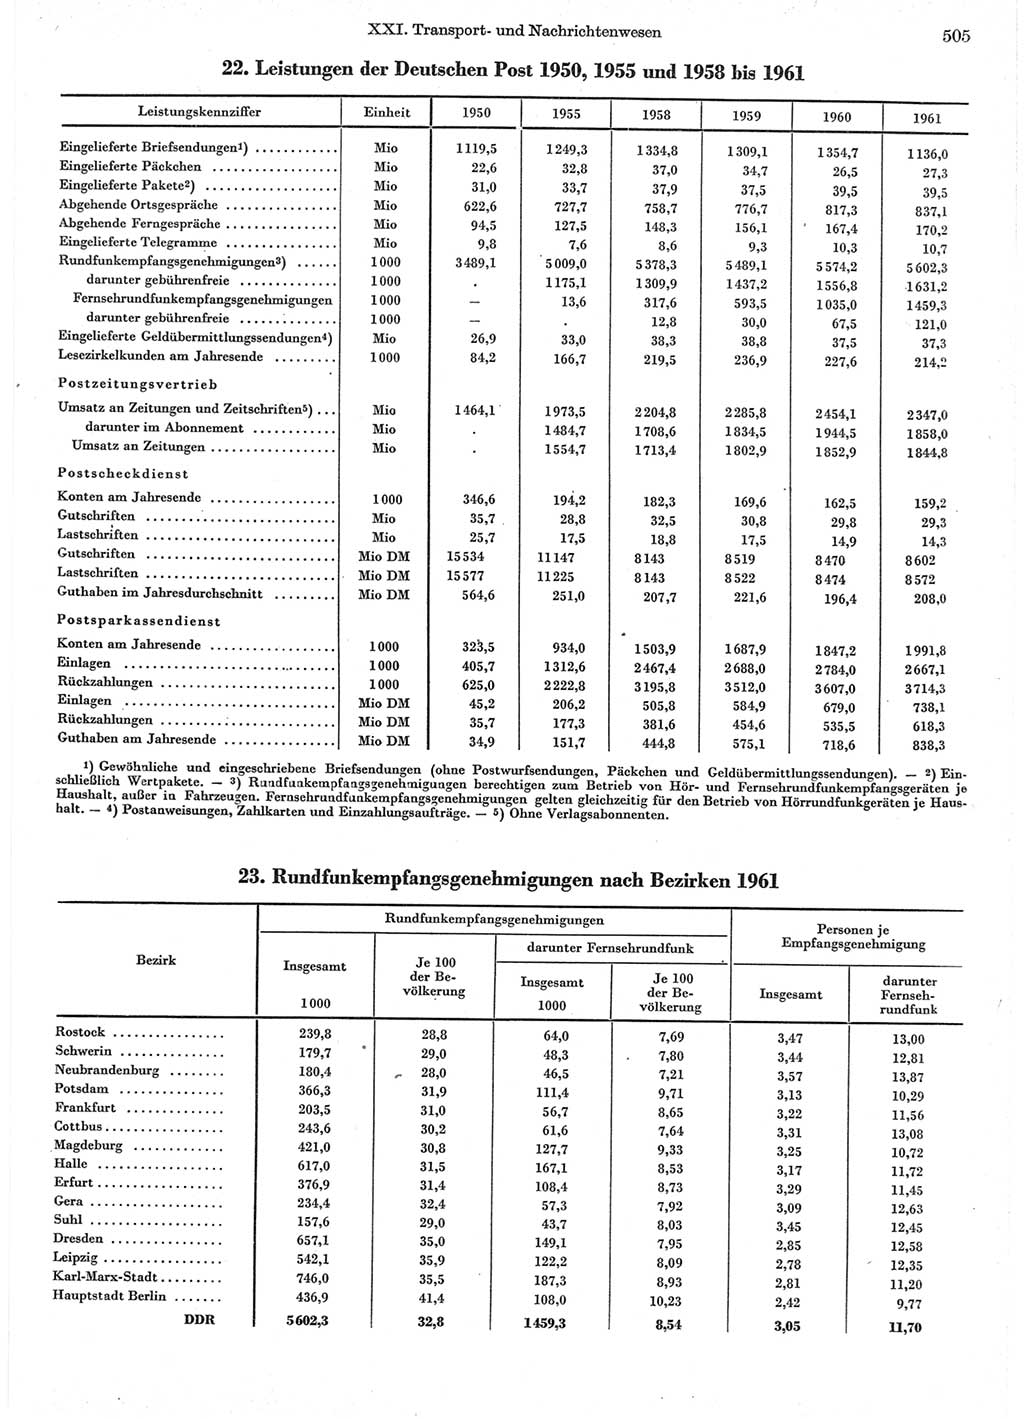 Statistisches Jahrbuch der Deutschen Demokratischen Republik (DDR) 1962, Seite 505 (Stat. Jb. DDR 1962, S. 505)